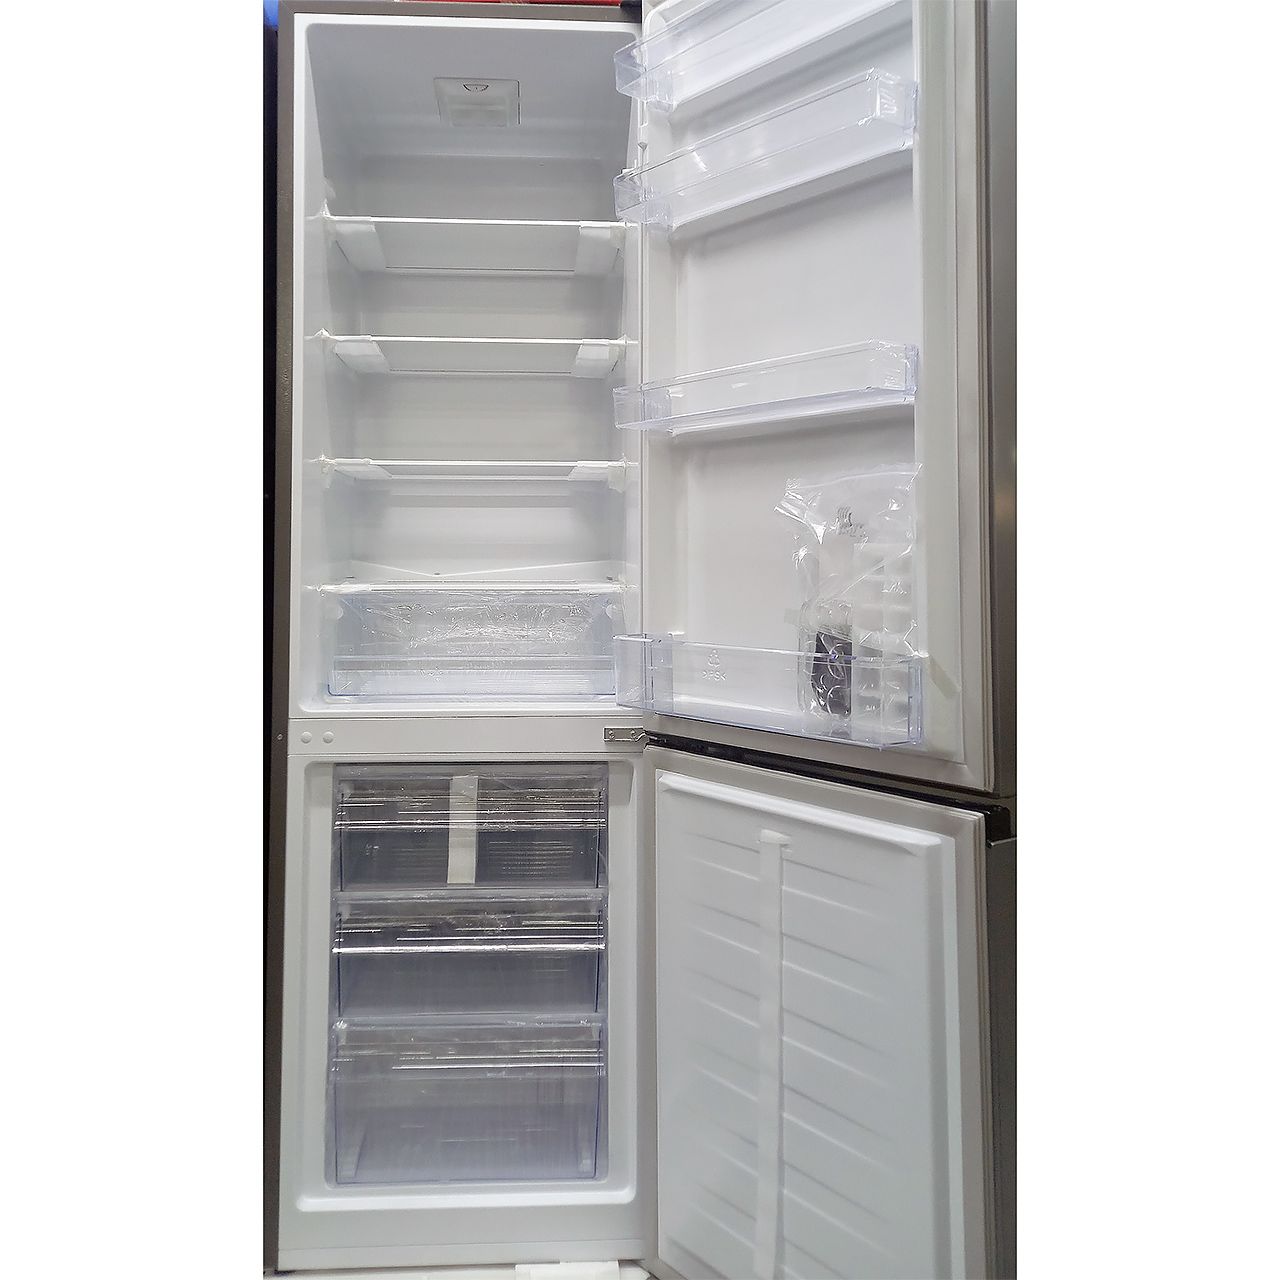 Холодильник двухкамерный Hisense 264 литра